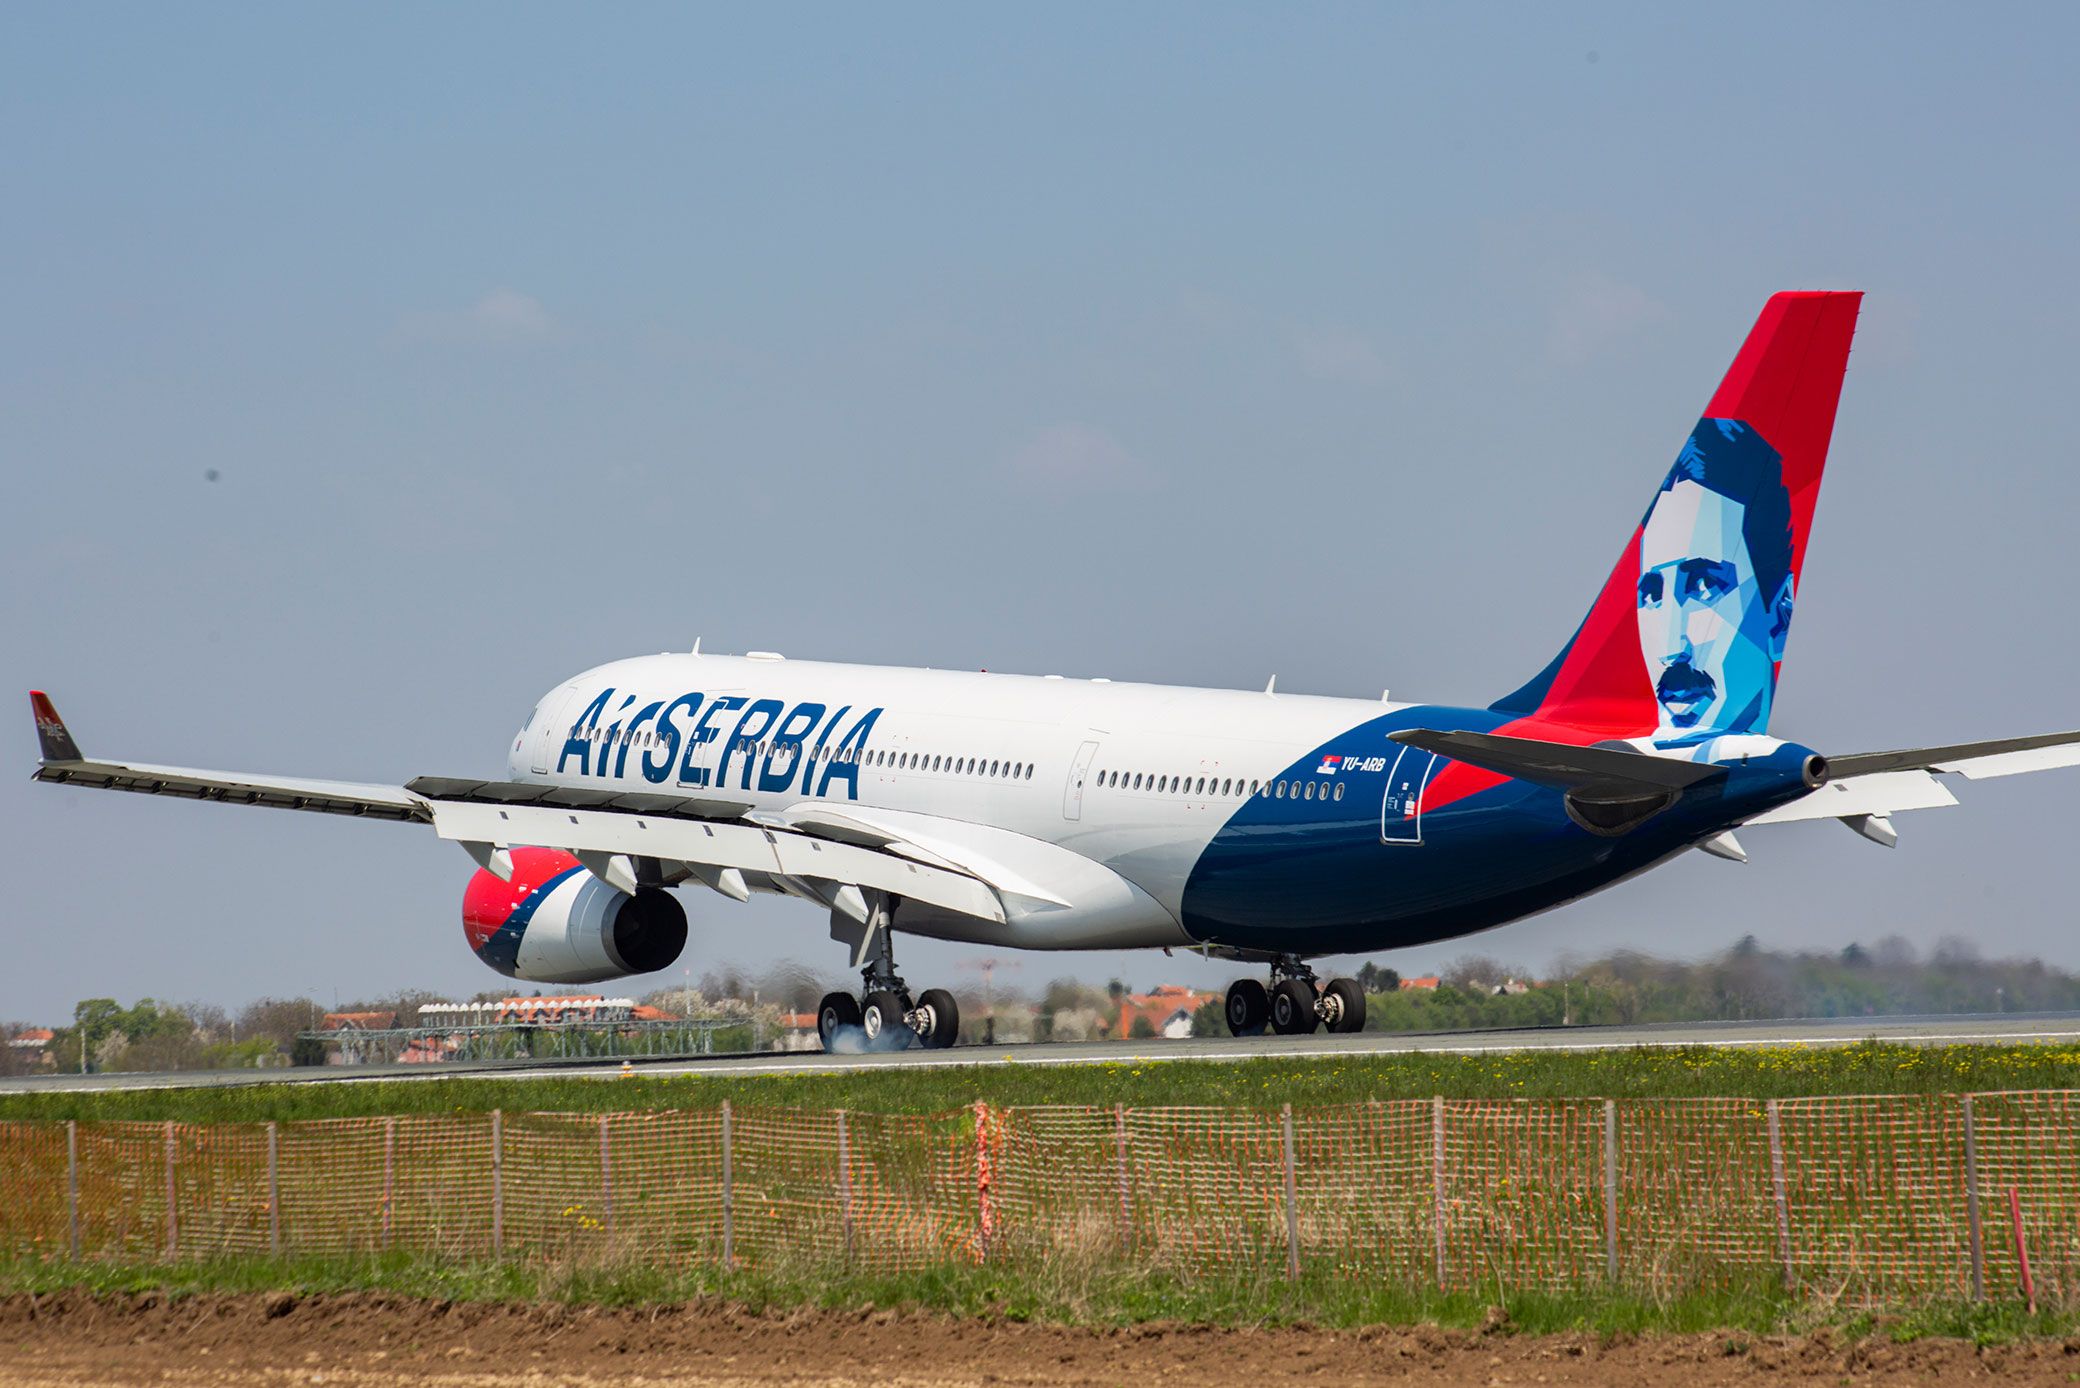 Air Serbia aircraft image